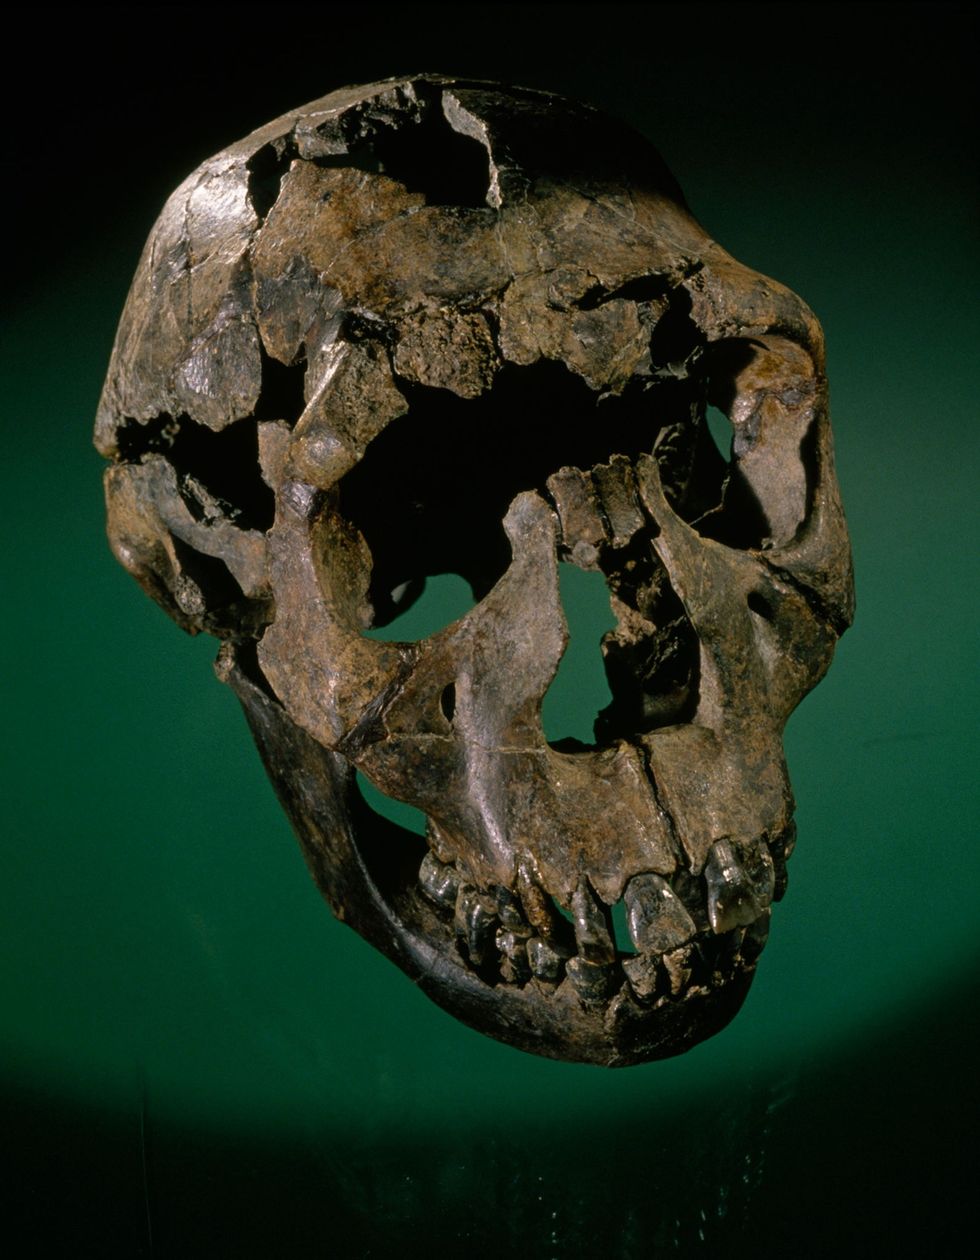 Het 16 miljoen oude skelet van de Turkanajongen dat formeel te boek staat als KNMWT 15000 maar ook wel de Nariokotome Boy wordt genoemd werd in 1984 ontdekt door Kamoya Kimeu Hij stond aan het hoofd van de naar fossielen speurende Hominid Gang die nauw samenwerkte met Richard Leakey